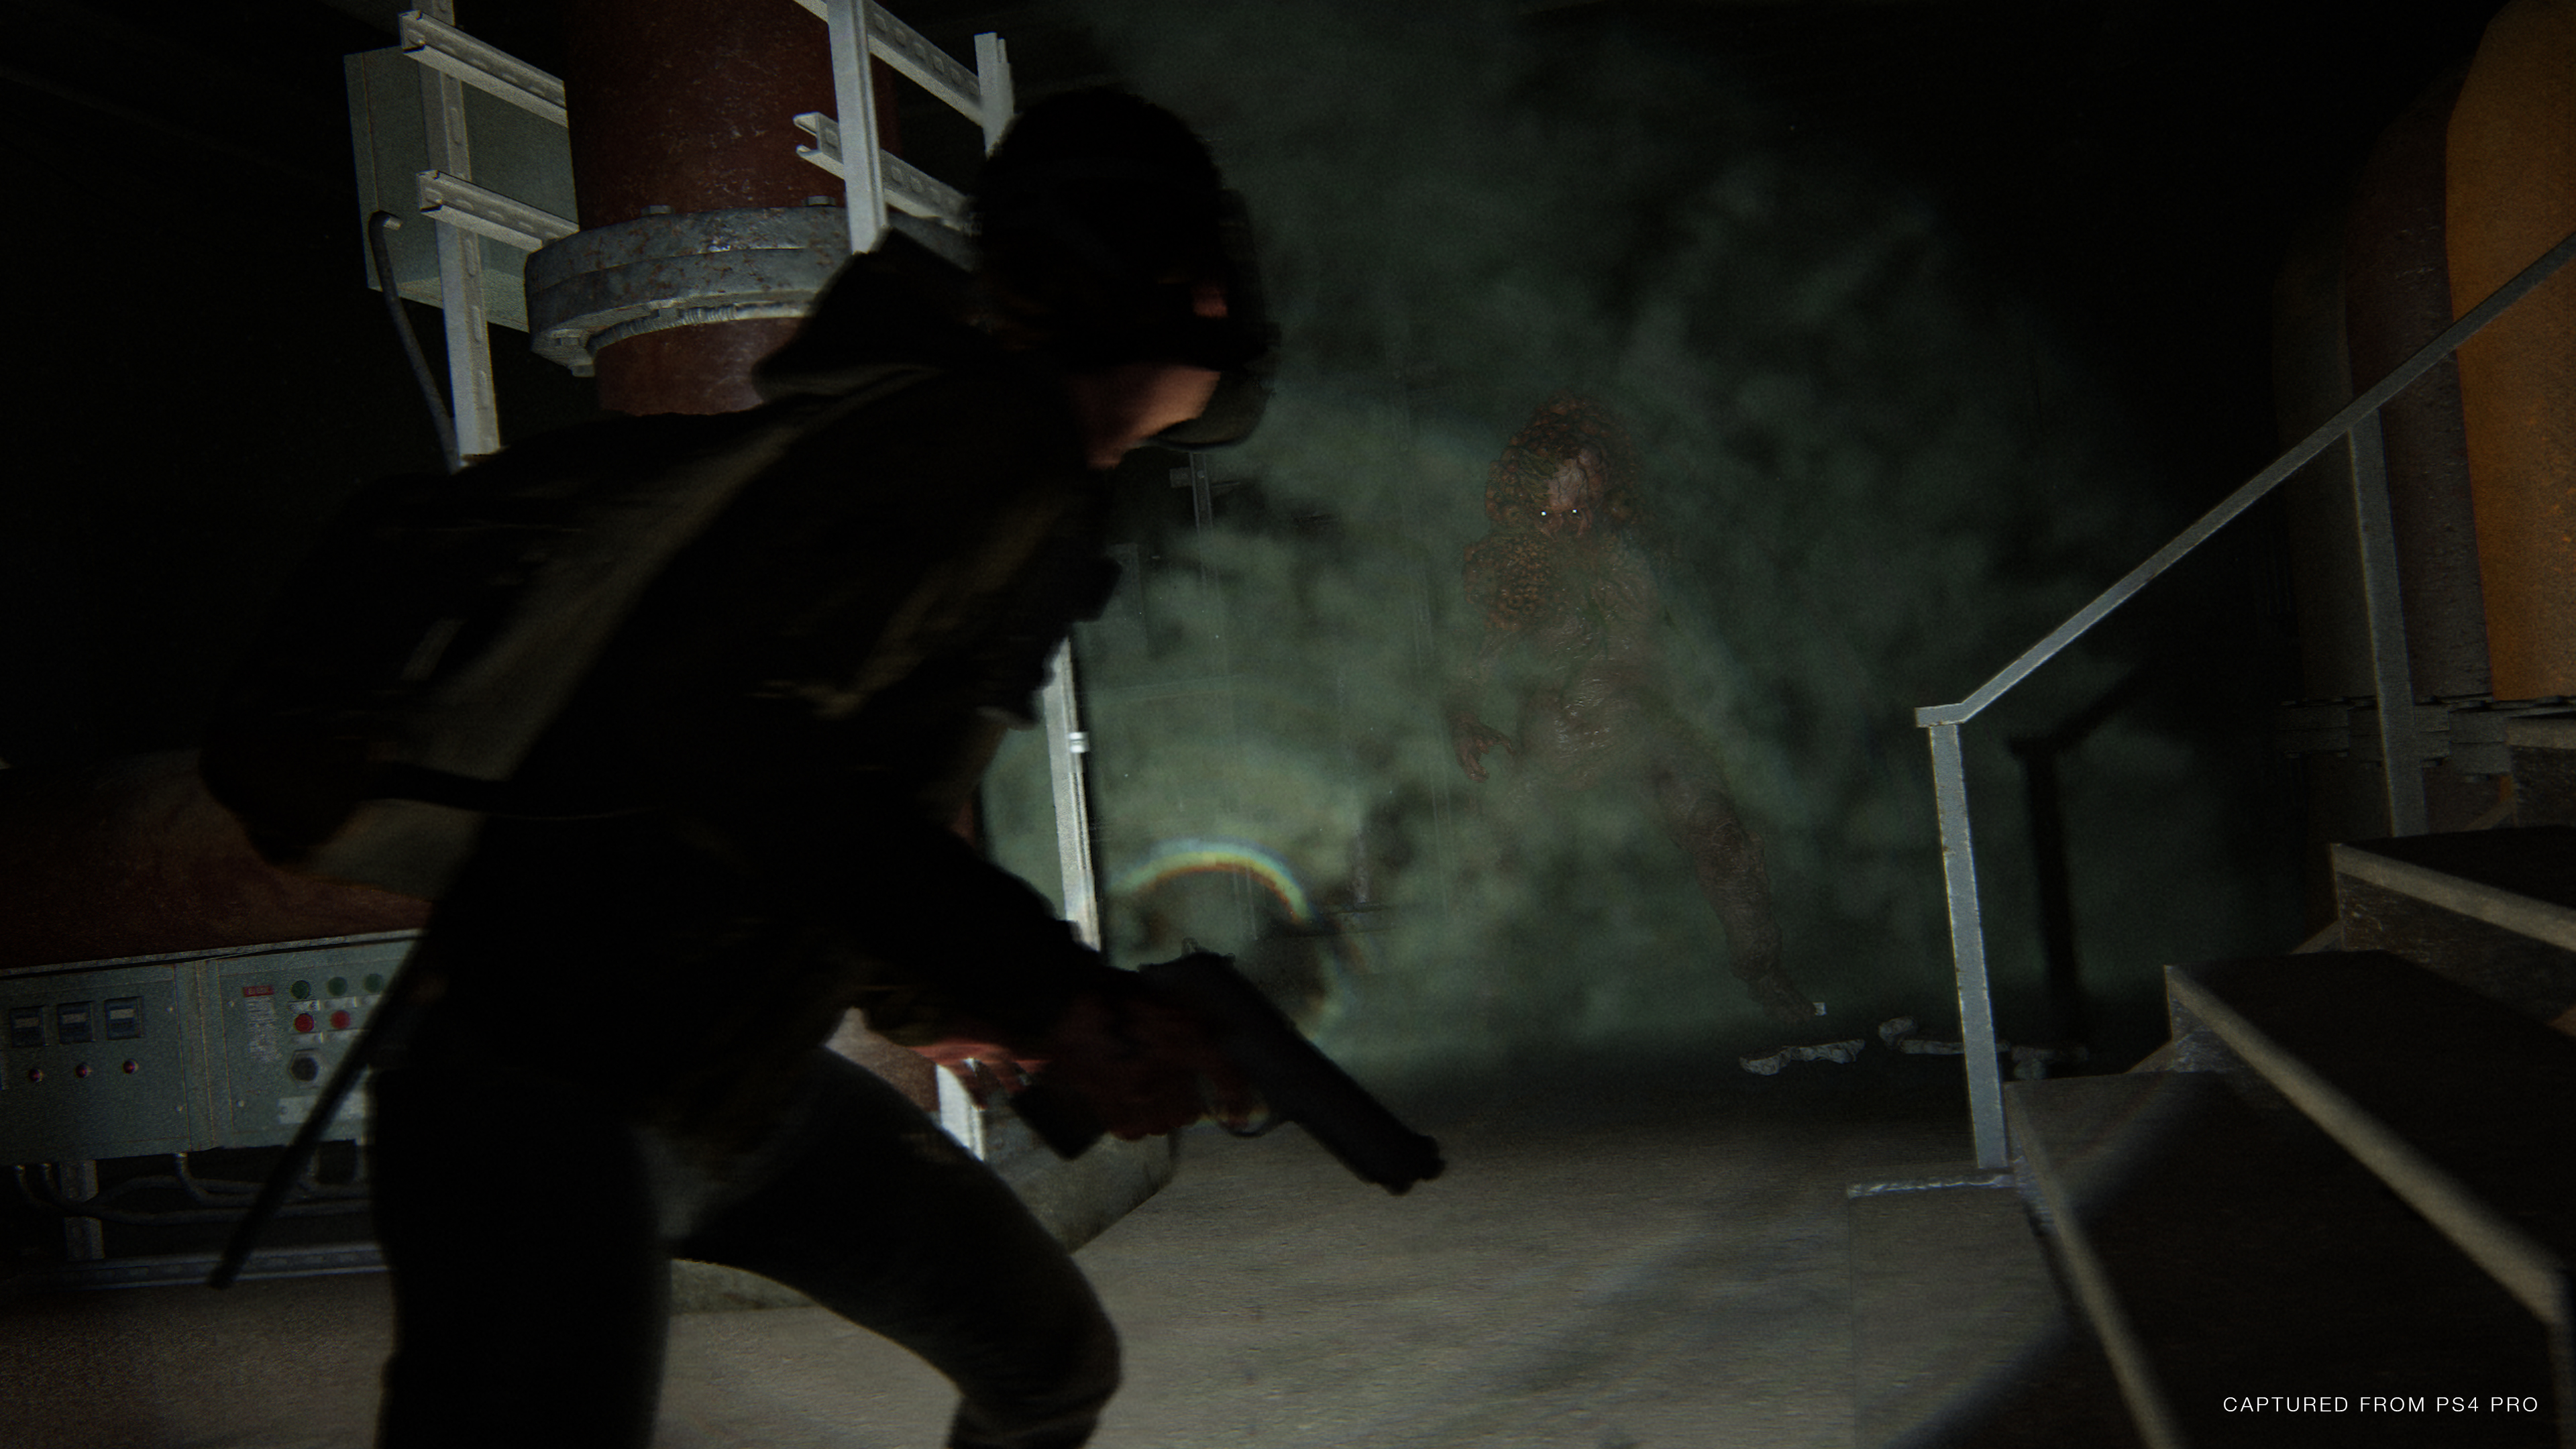 Pré-load de The Last of Us Part II está disponível; jogo é o exclusivo mais  bem avaliado de PS4 - PSX Brasil